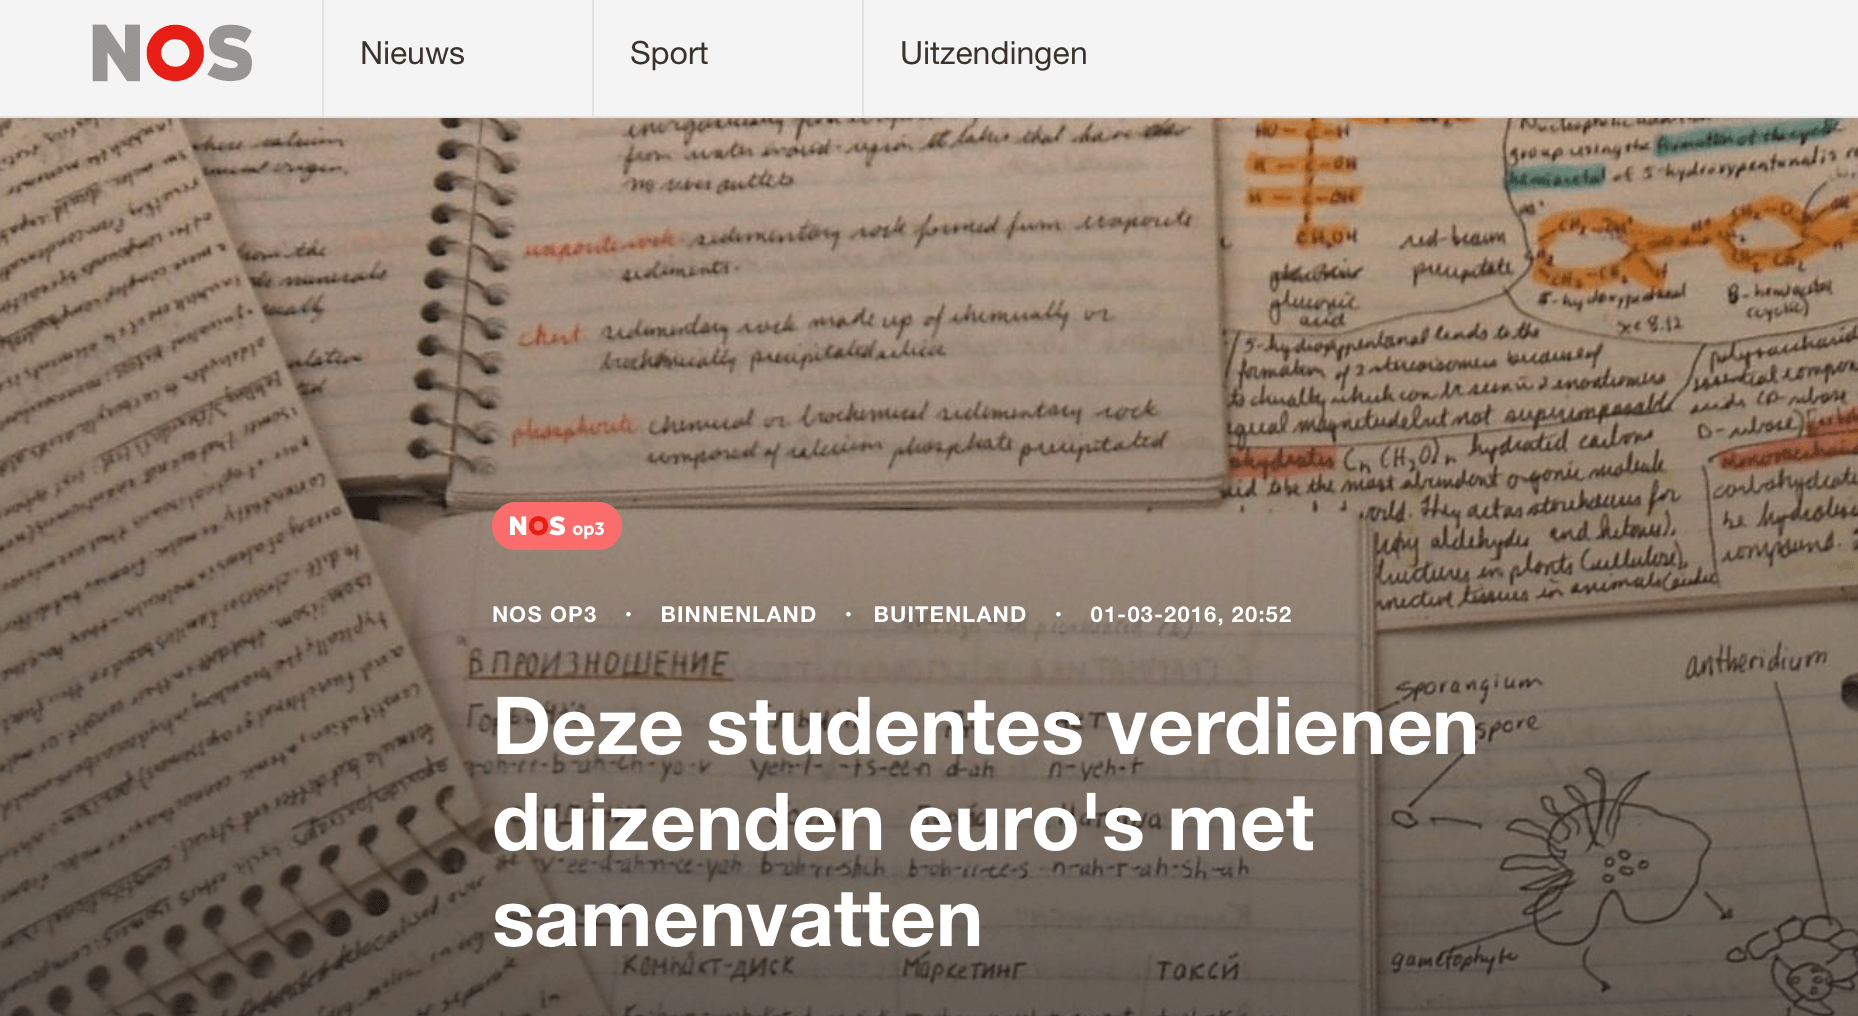 Volgens de NOS verdienen sommige studenten duizenden euro's met samenvattingenverkoop